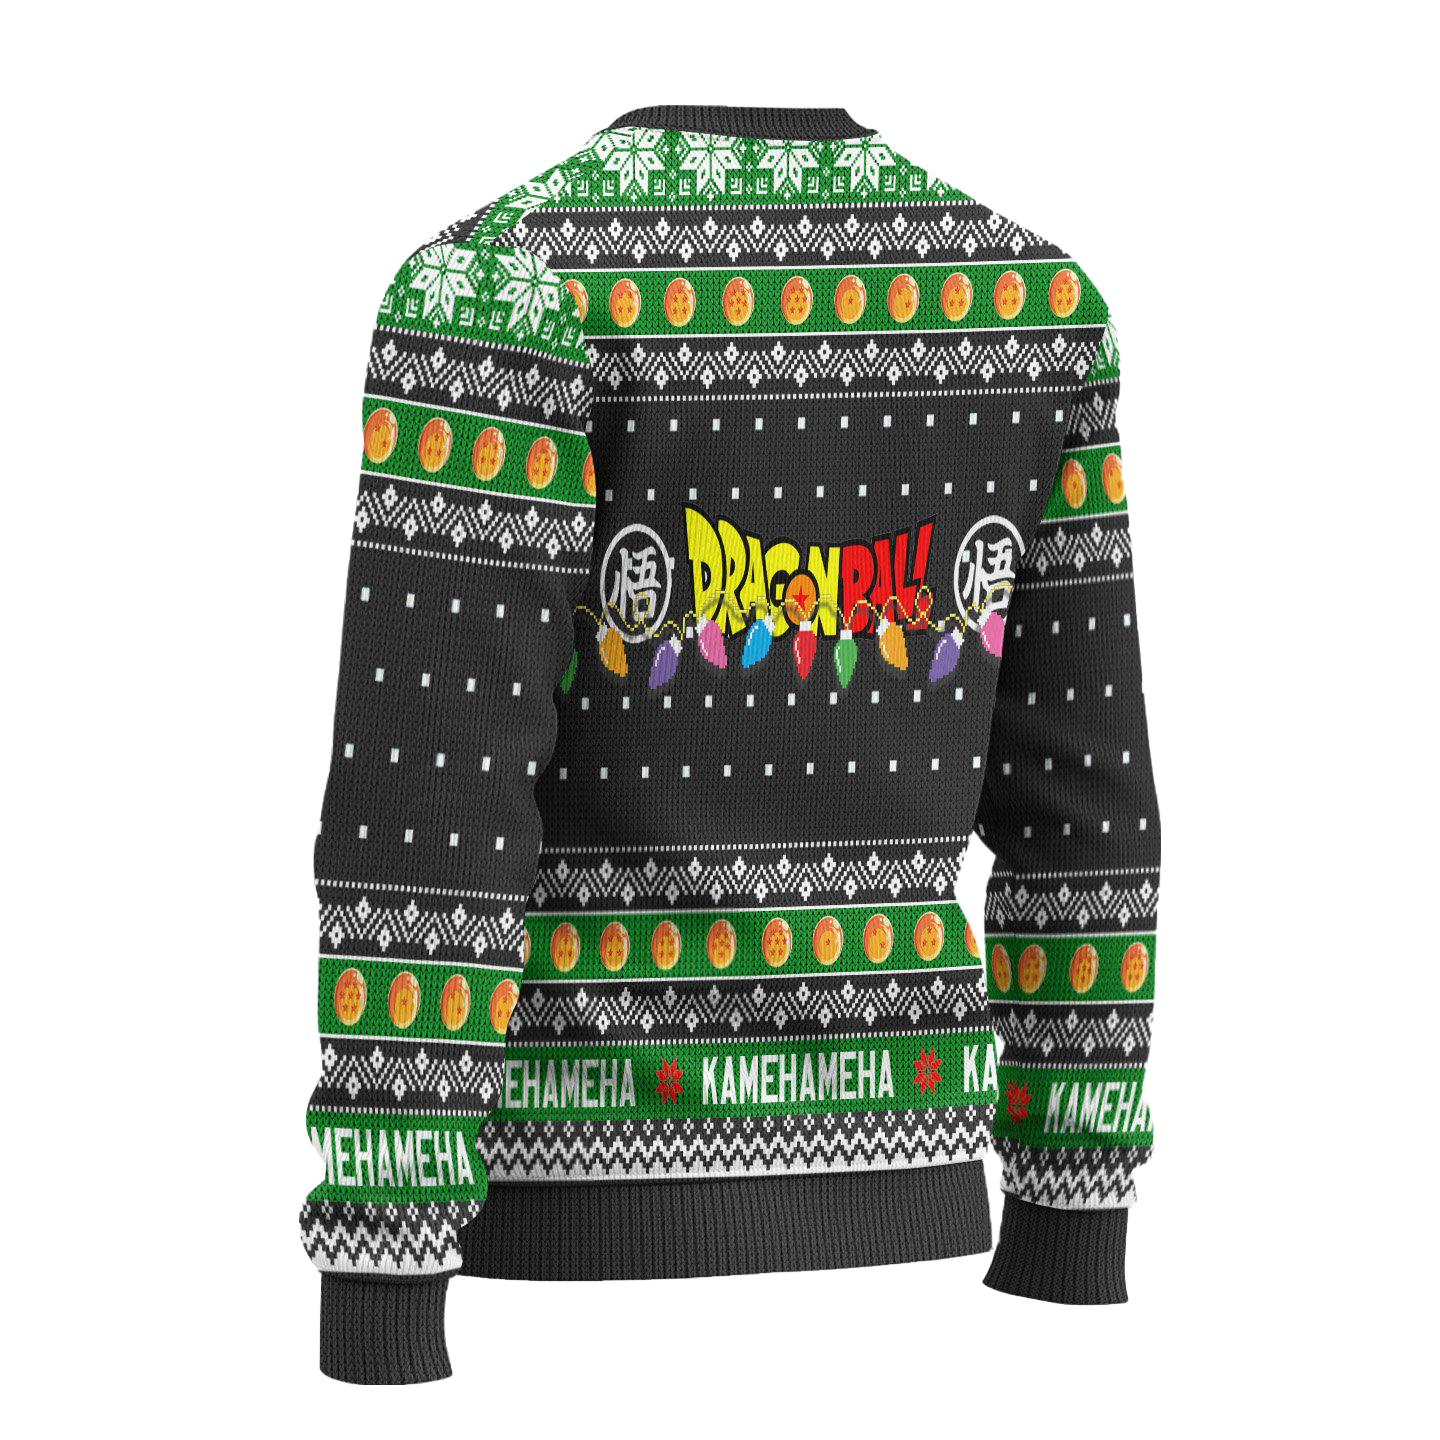 Vegeta Dragon Ball Anime Ugly Christmas Sweater Xmas Gift